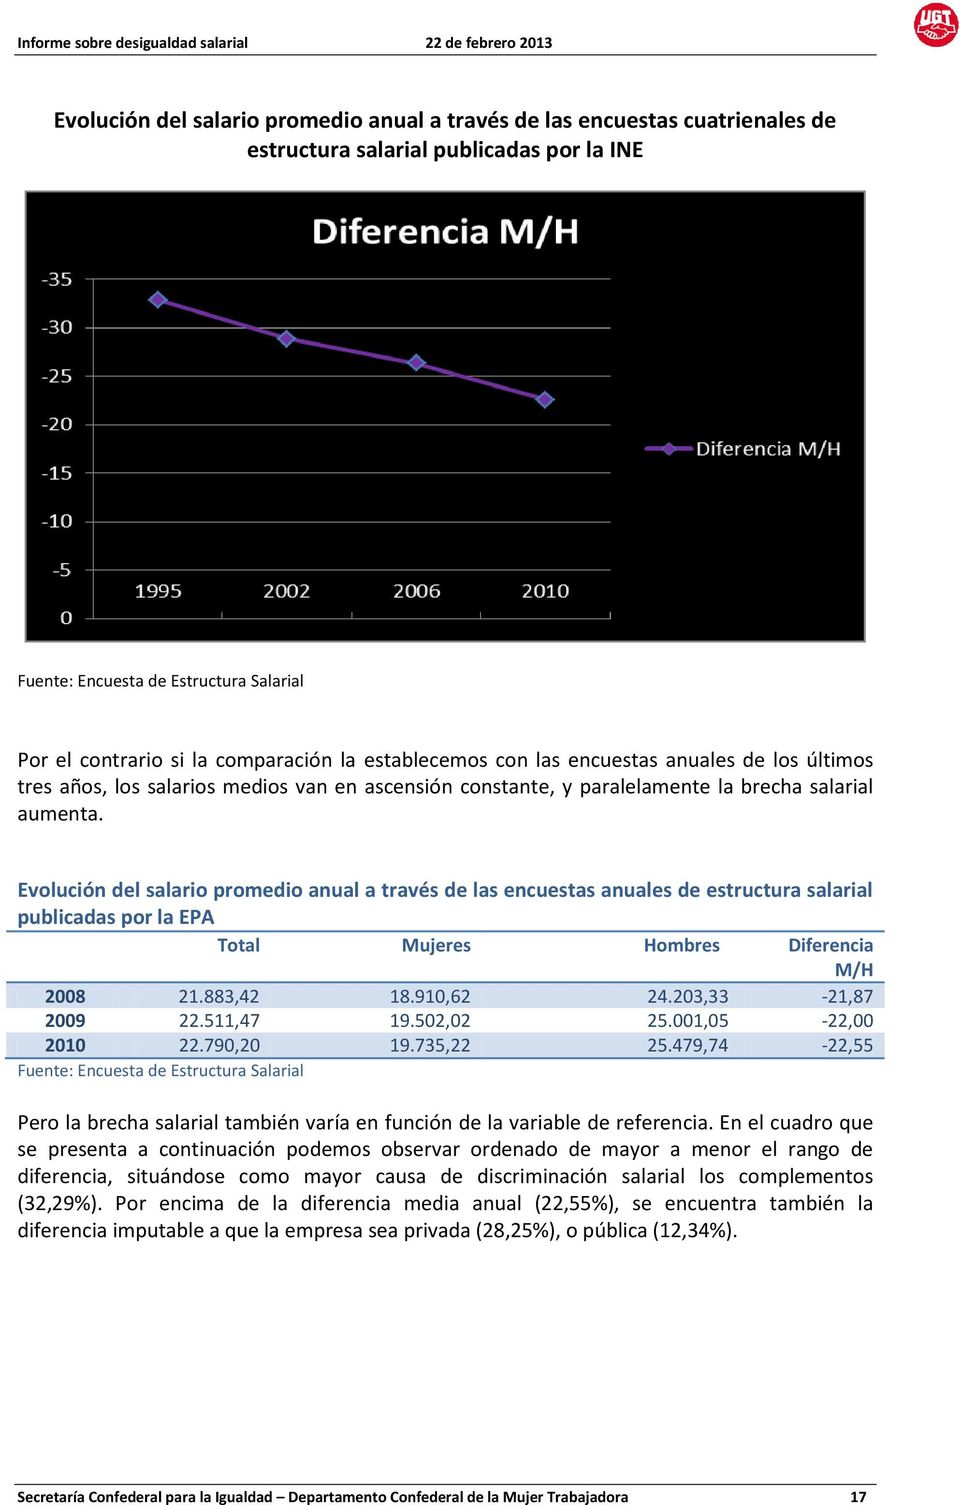 Evlución del salari prmedi anual a través de las encuestas anuales de estructura salarial publicadas pr la EPA Ttal Mujeres Hmbres Diferencia M/H 2008 21.883,42 18.910,62 24.203,33-21,87 2009 22.